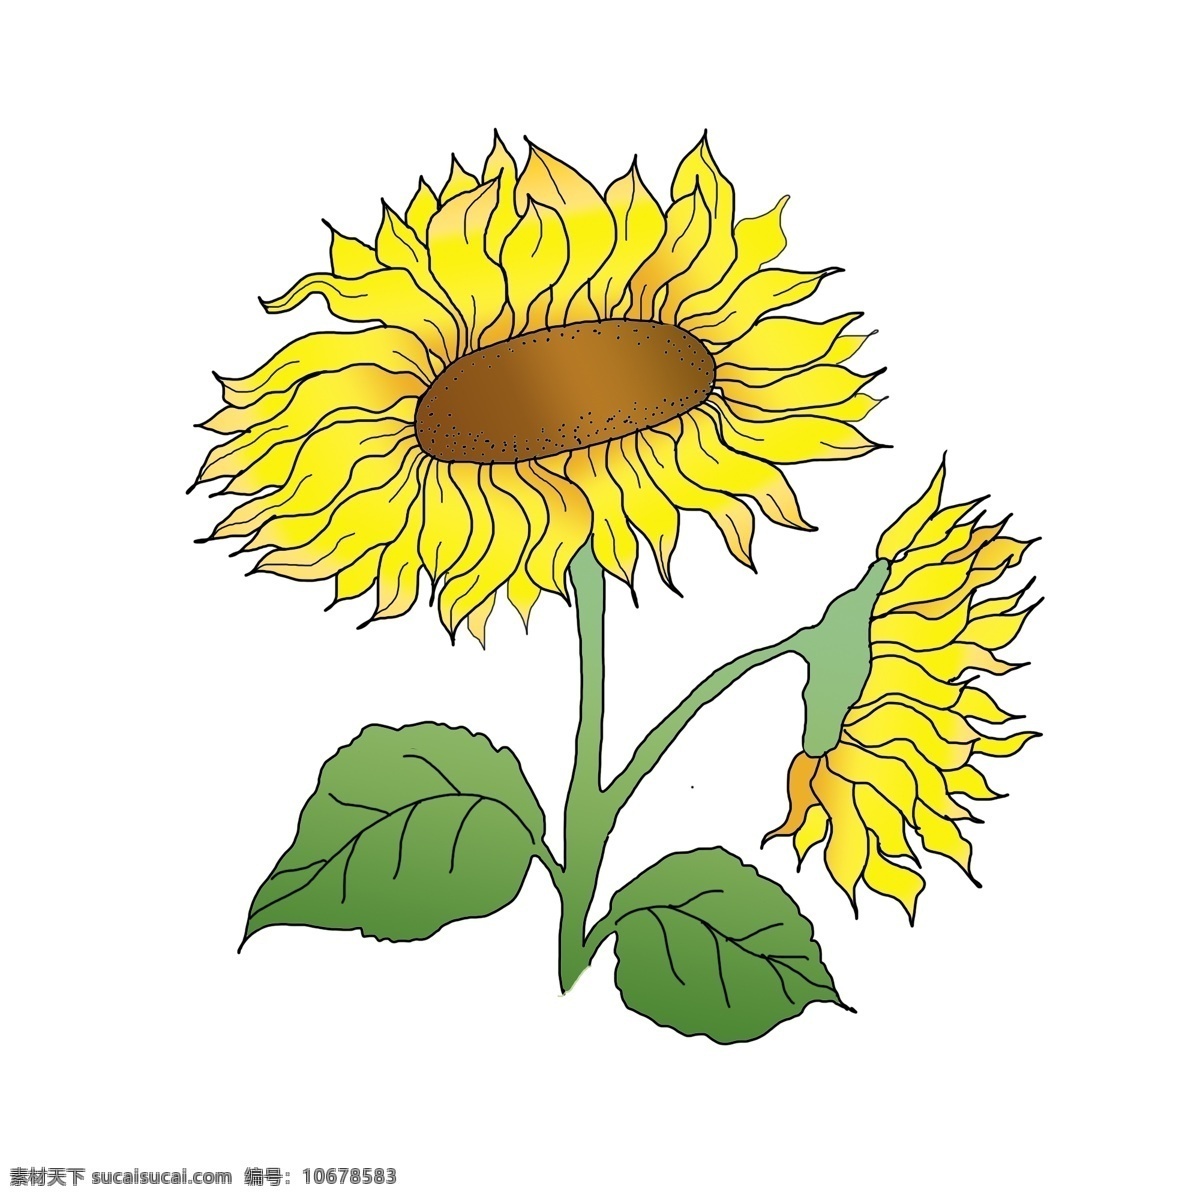 向日葵 手绘 风向 日 葵花 商用 元素 手绘花卉 手绘花 花卉 叶子 手绘向日葵 向日葵手绘